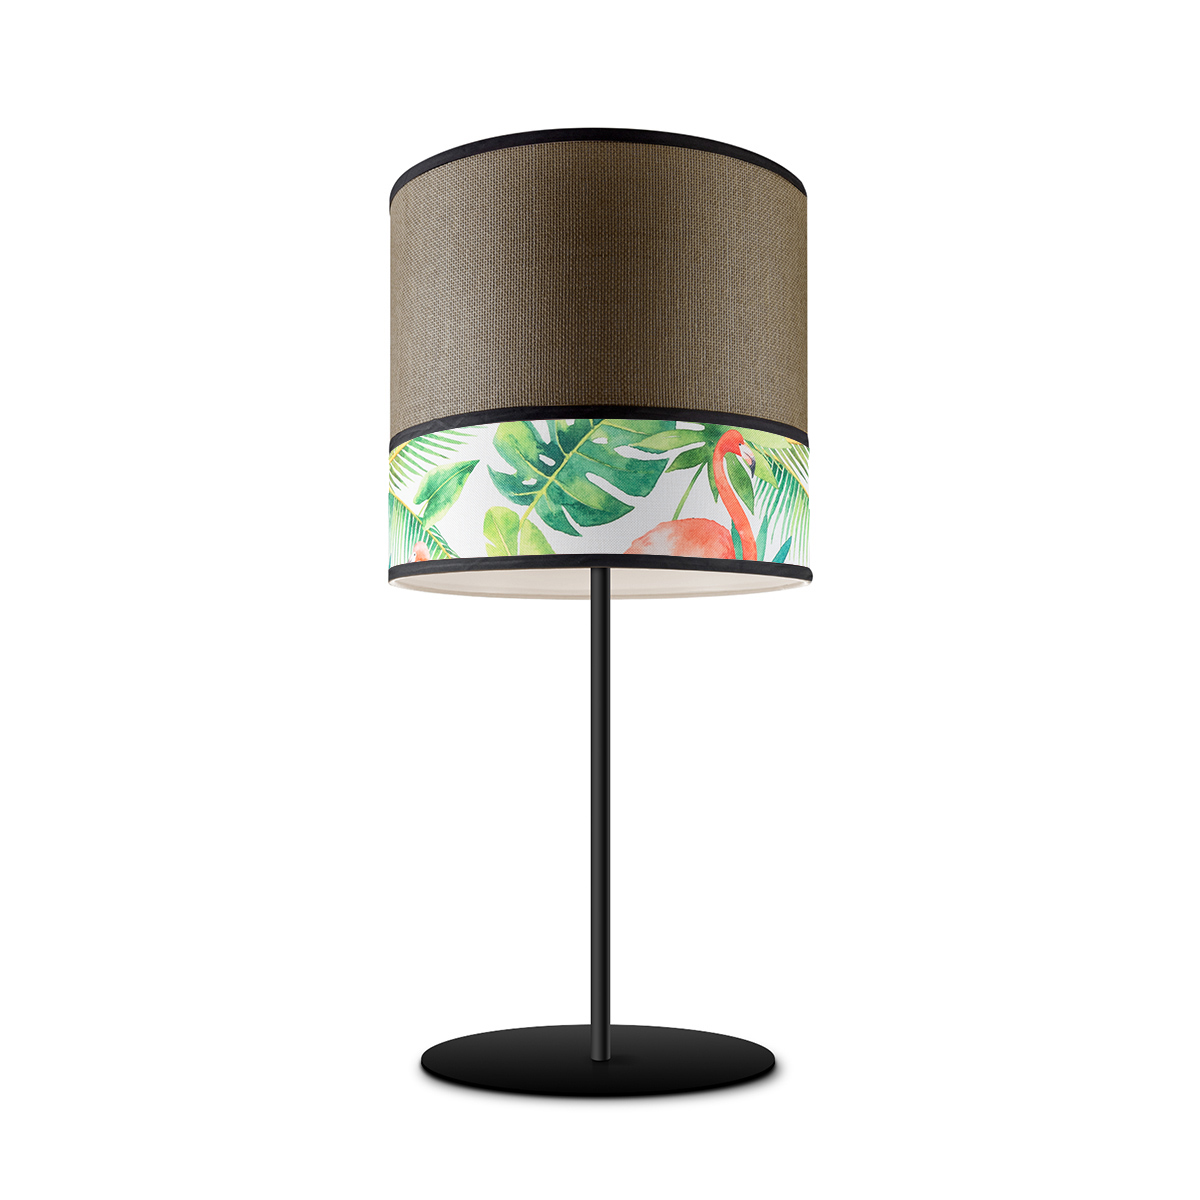 Tangla lighting - TLT7012-25D - Table lamp 1 Light - metal + paper + TC fabric - spring - dark crane - E27